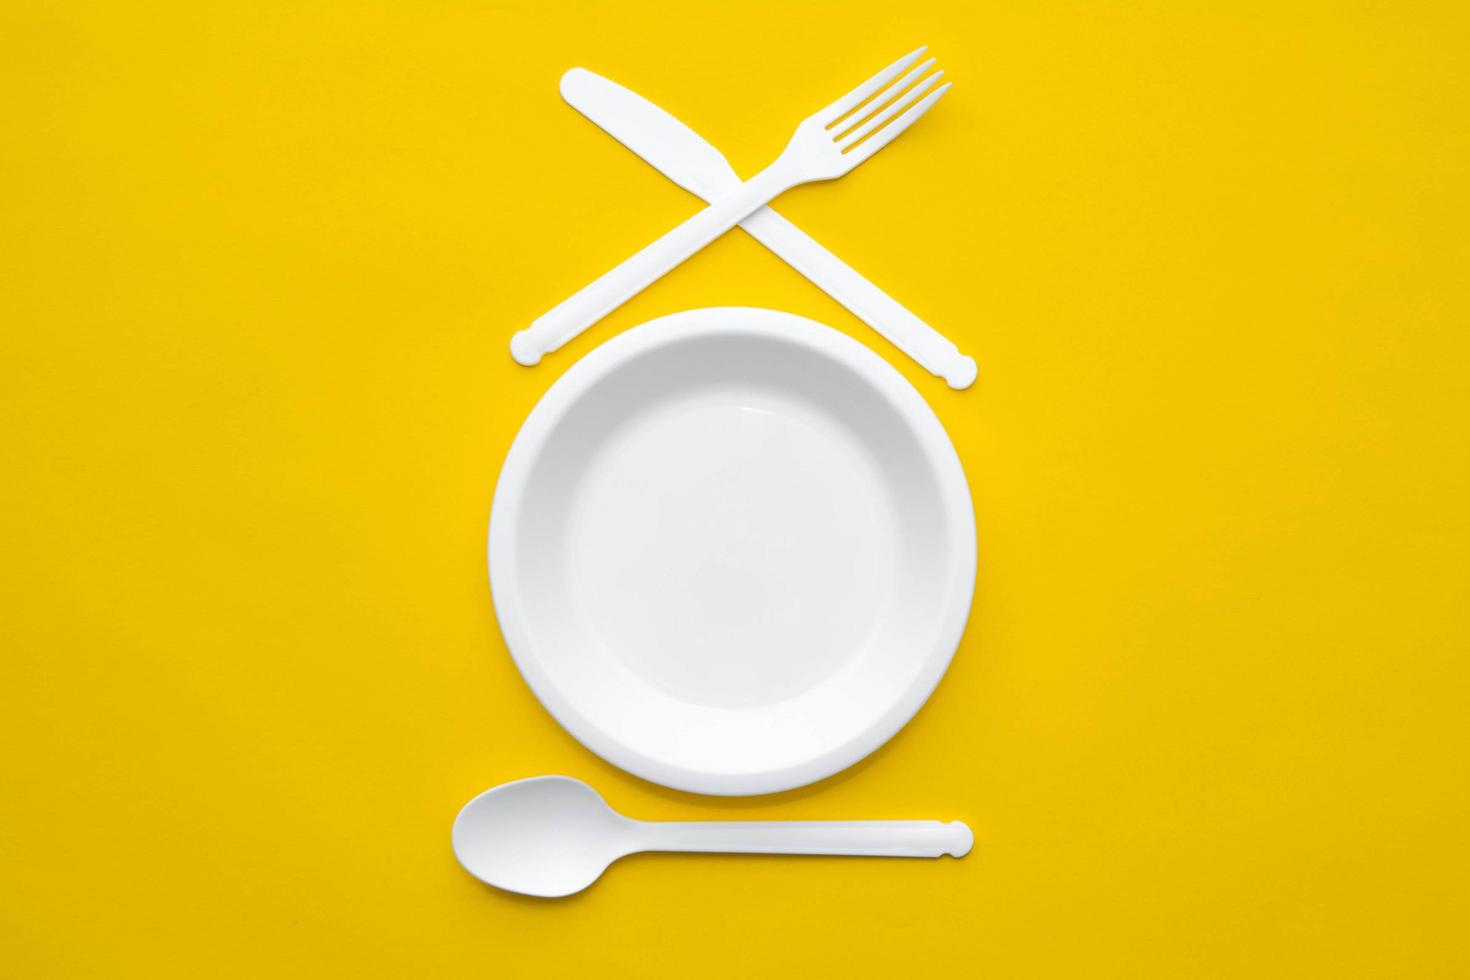 forchetta, coltello, cucchiaio e piatto in plastica bianca su sfondo giallo foto